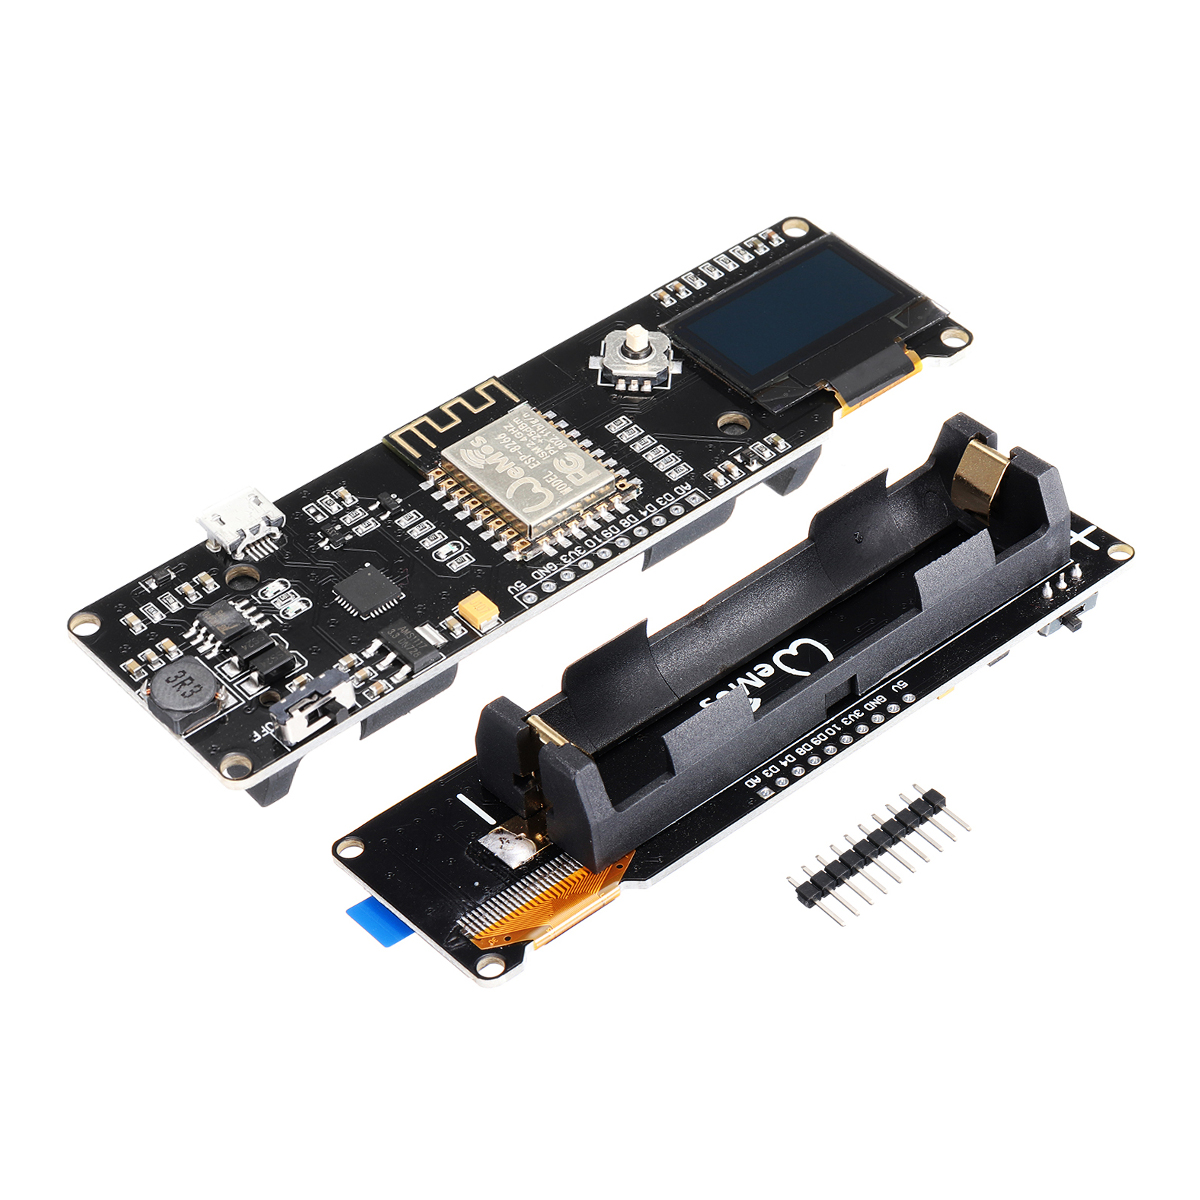 

Geekcreit® D1 ESP-Wroom-02 Motherboard ESP8266 Mini-WiFi NodeMCU Module ESP8266+18650 Battery+0.96 OLED